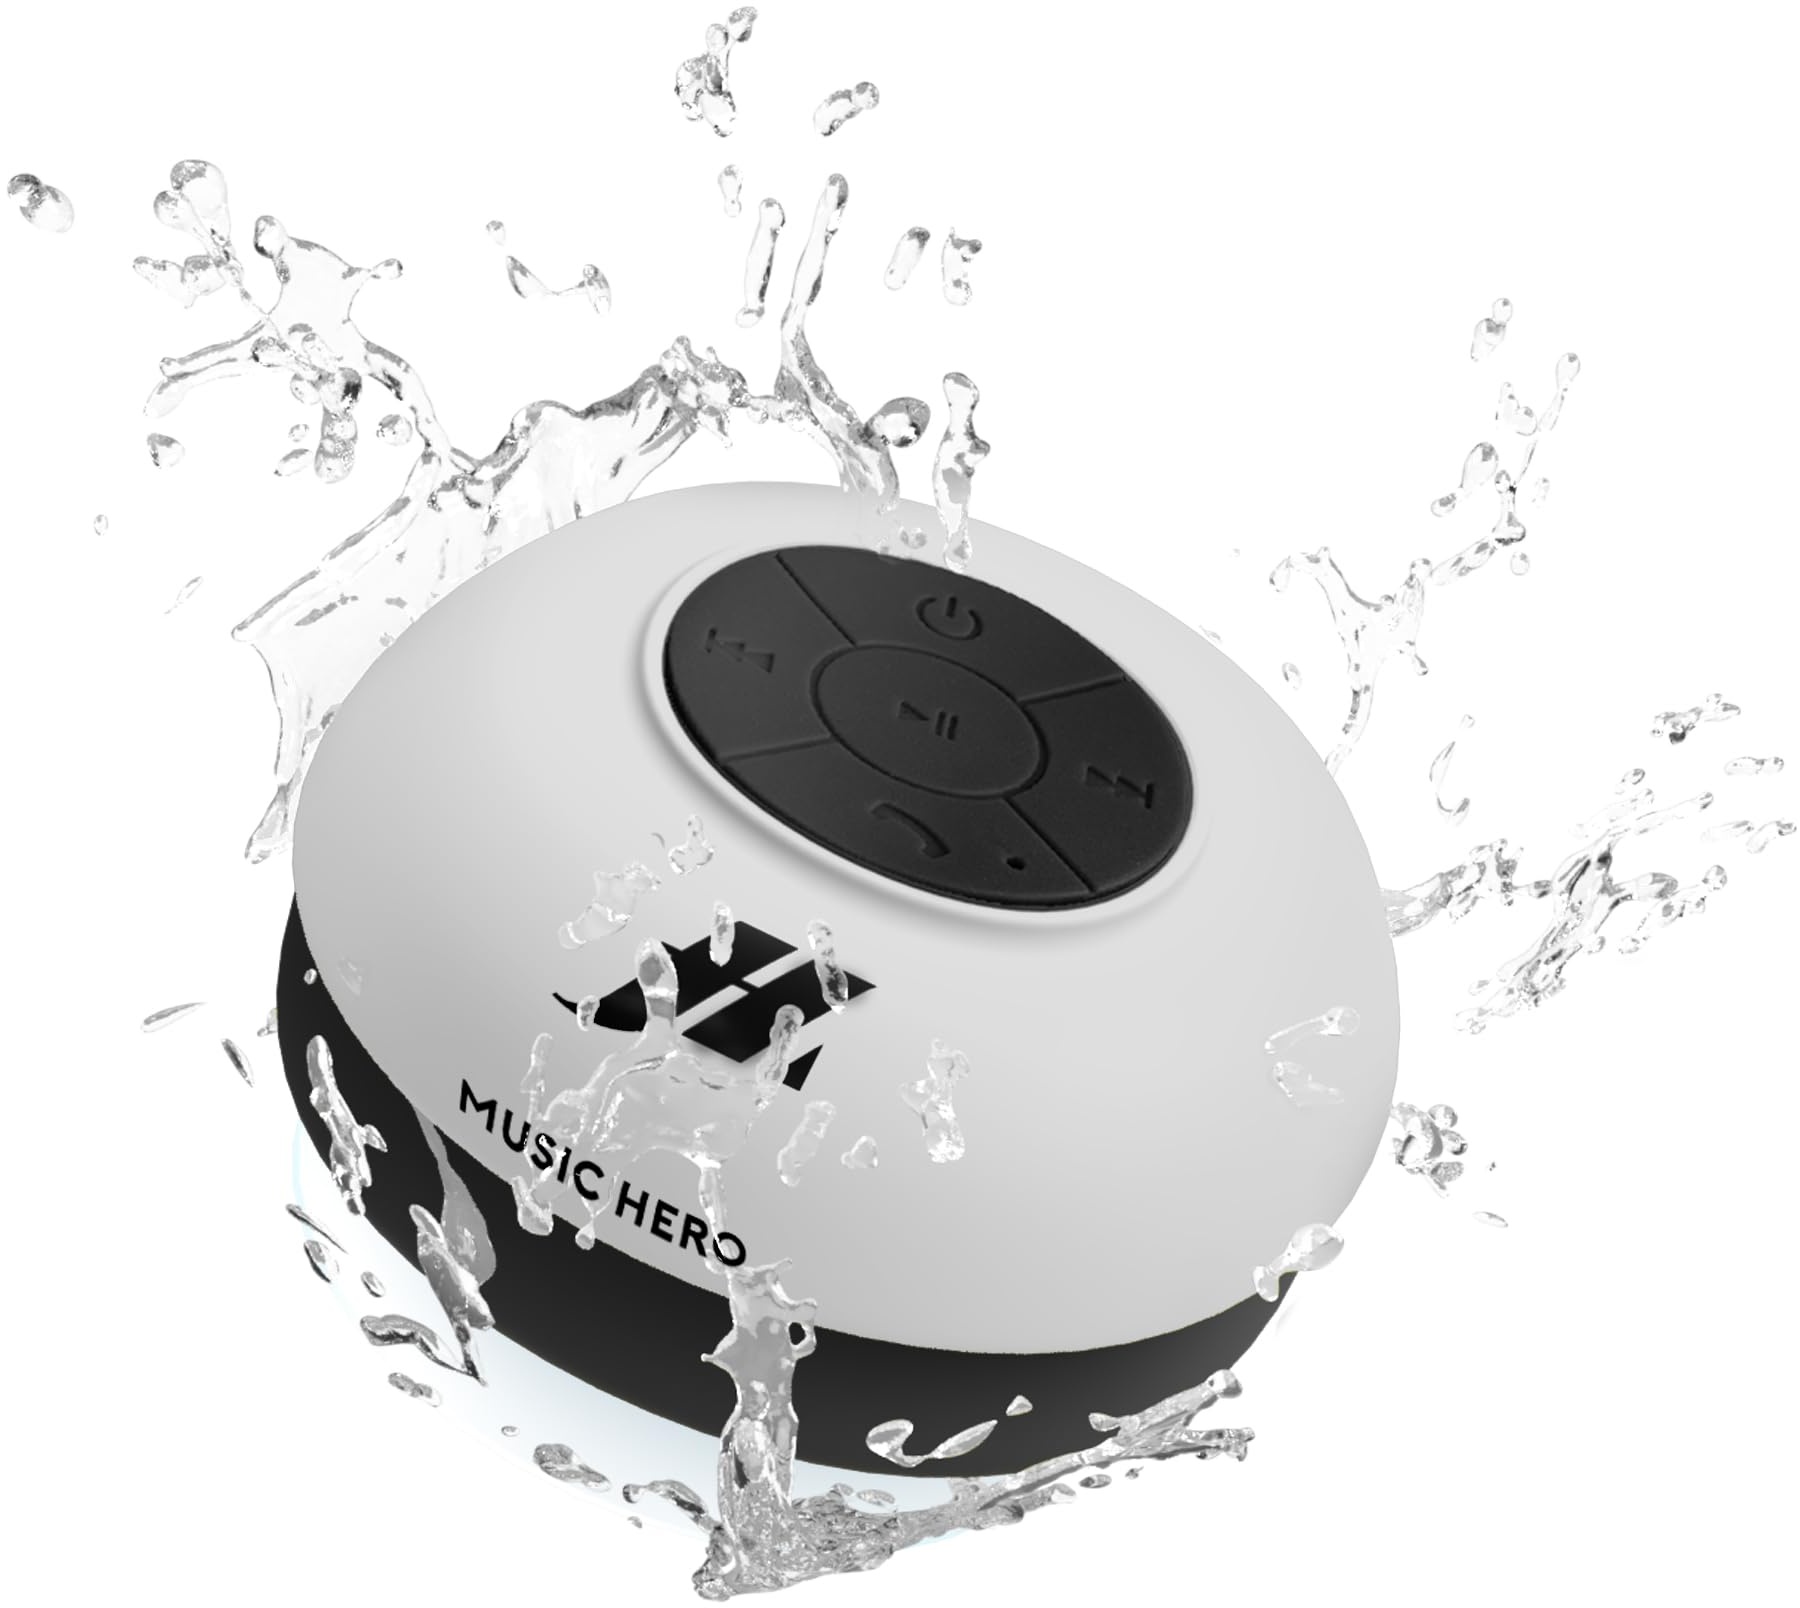 SBS Bluetooth Lautsprecher wasserdicht & kabellos - Wireless Speaker mit Saugnapf, Freisprechfunktion & 3 Watt - Tragbare Musikbox in weiß für iPhone, Handy, Smartphone, Tablet